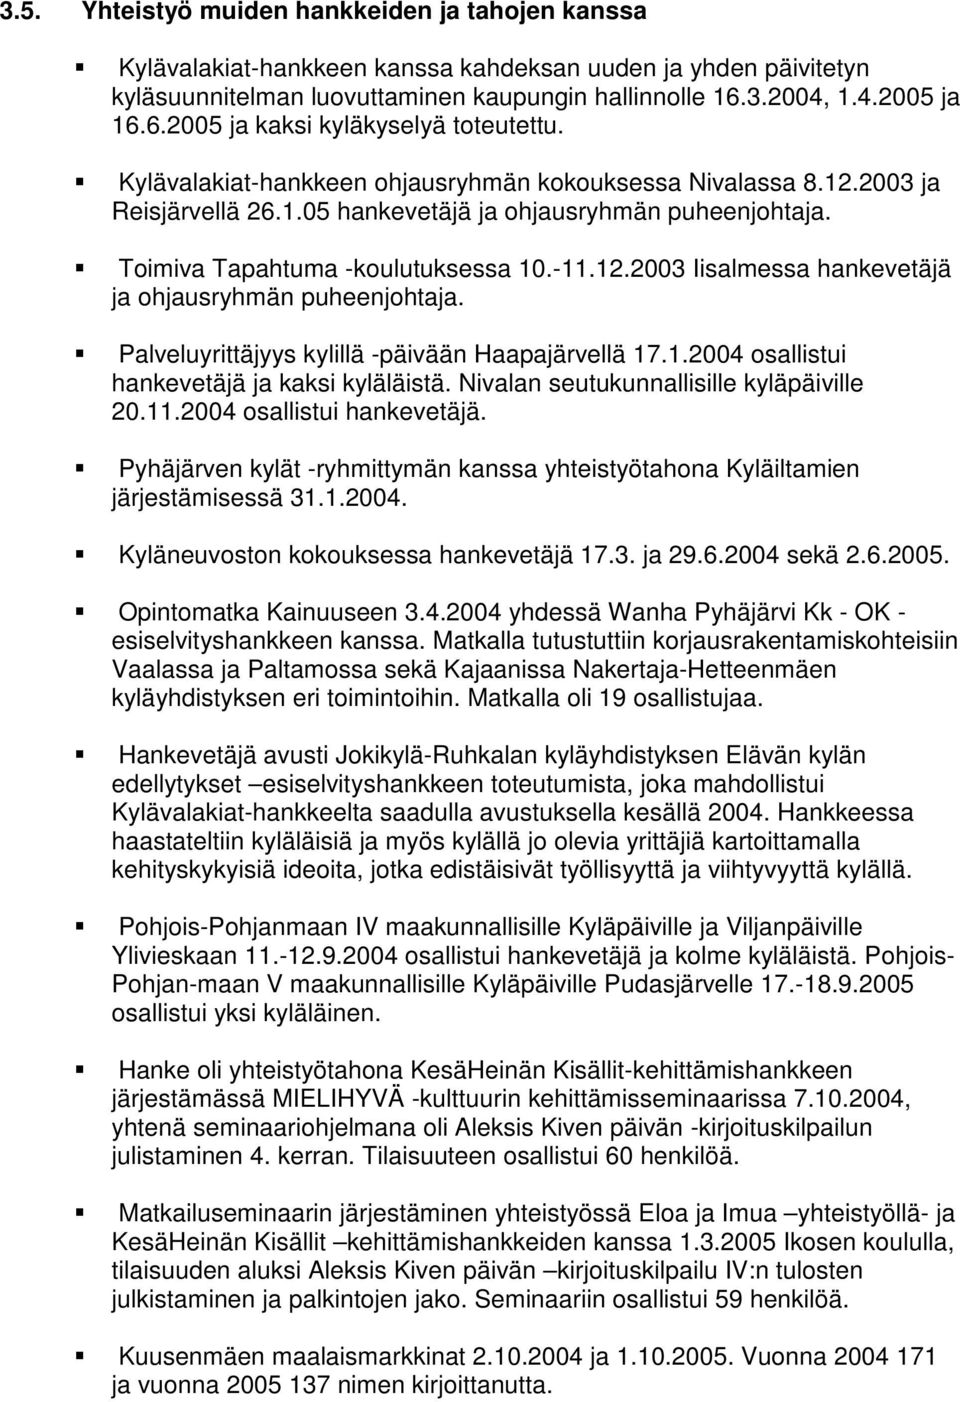 Toimiva Tapahtuma -koulutuksessa 10.-11.12.2003 Iisalmessa hankevetäjä ja ohjausryhmän puheenjohtaja. Palveluyrittäjyys kylillä -päivään Haapajärvellä 17.1.2004 osallistui hankevetäjä ja kaksi kyläläistä.